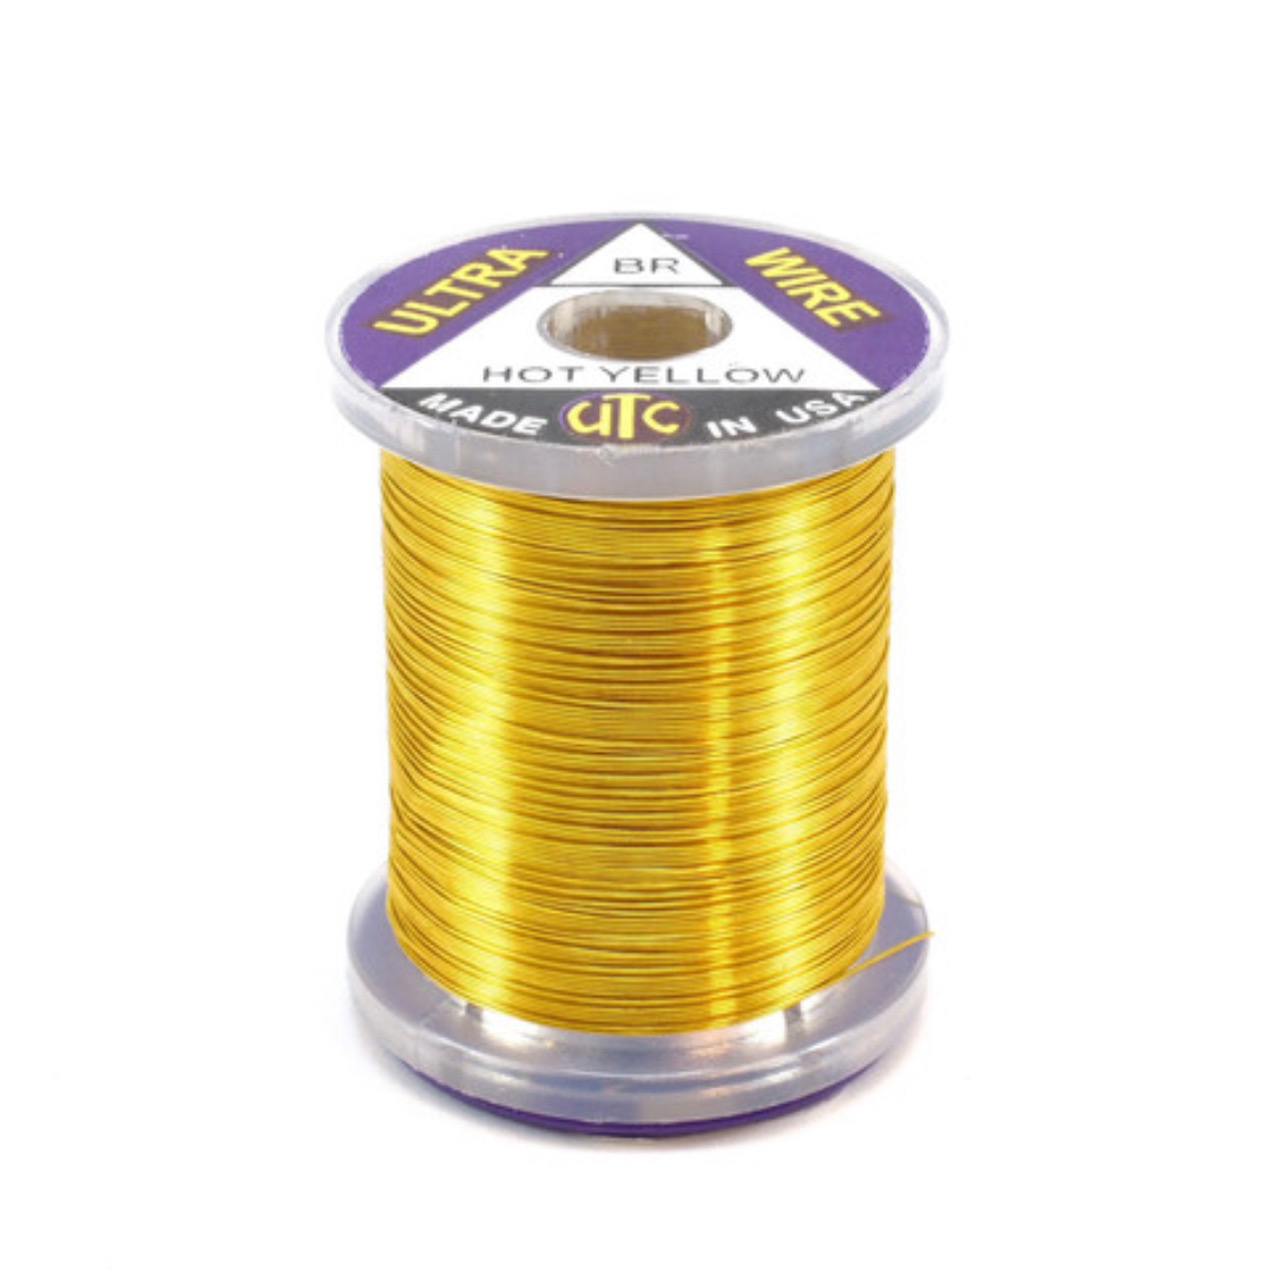 UTC Ultra Wire - Medium - Hot Yellow